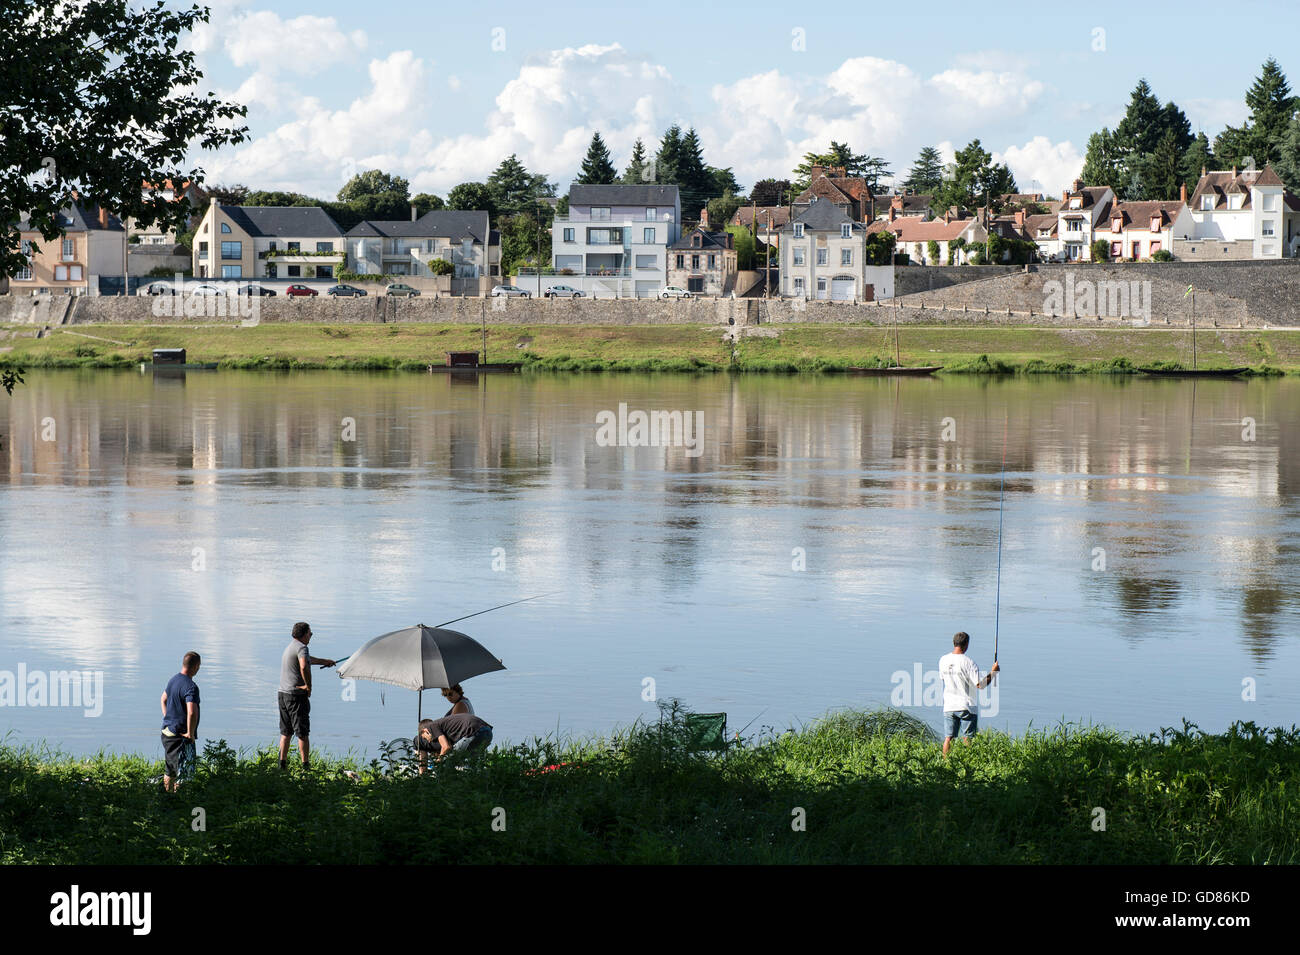 Europe, France, Loiret region, Loire river at Chateauneuf sur Loire Stock Photo